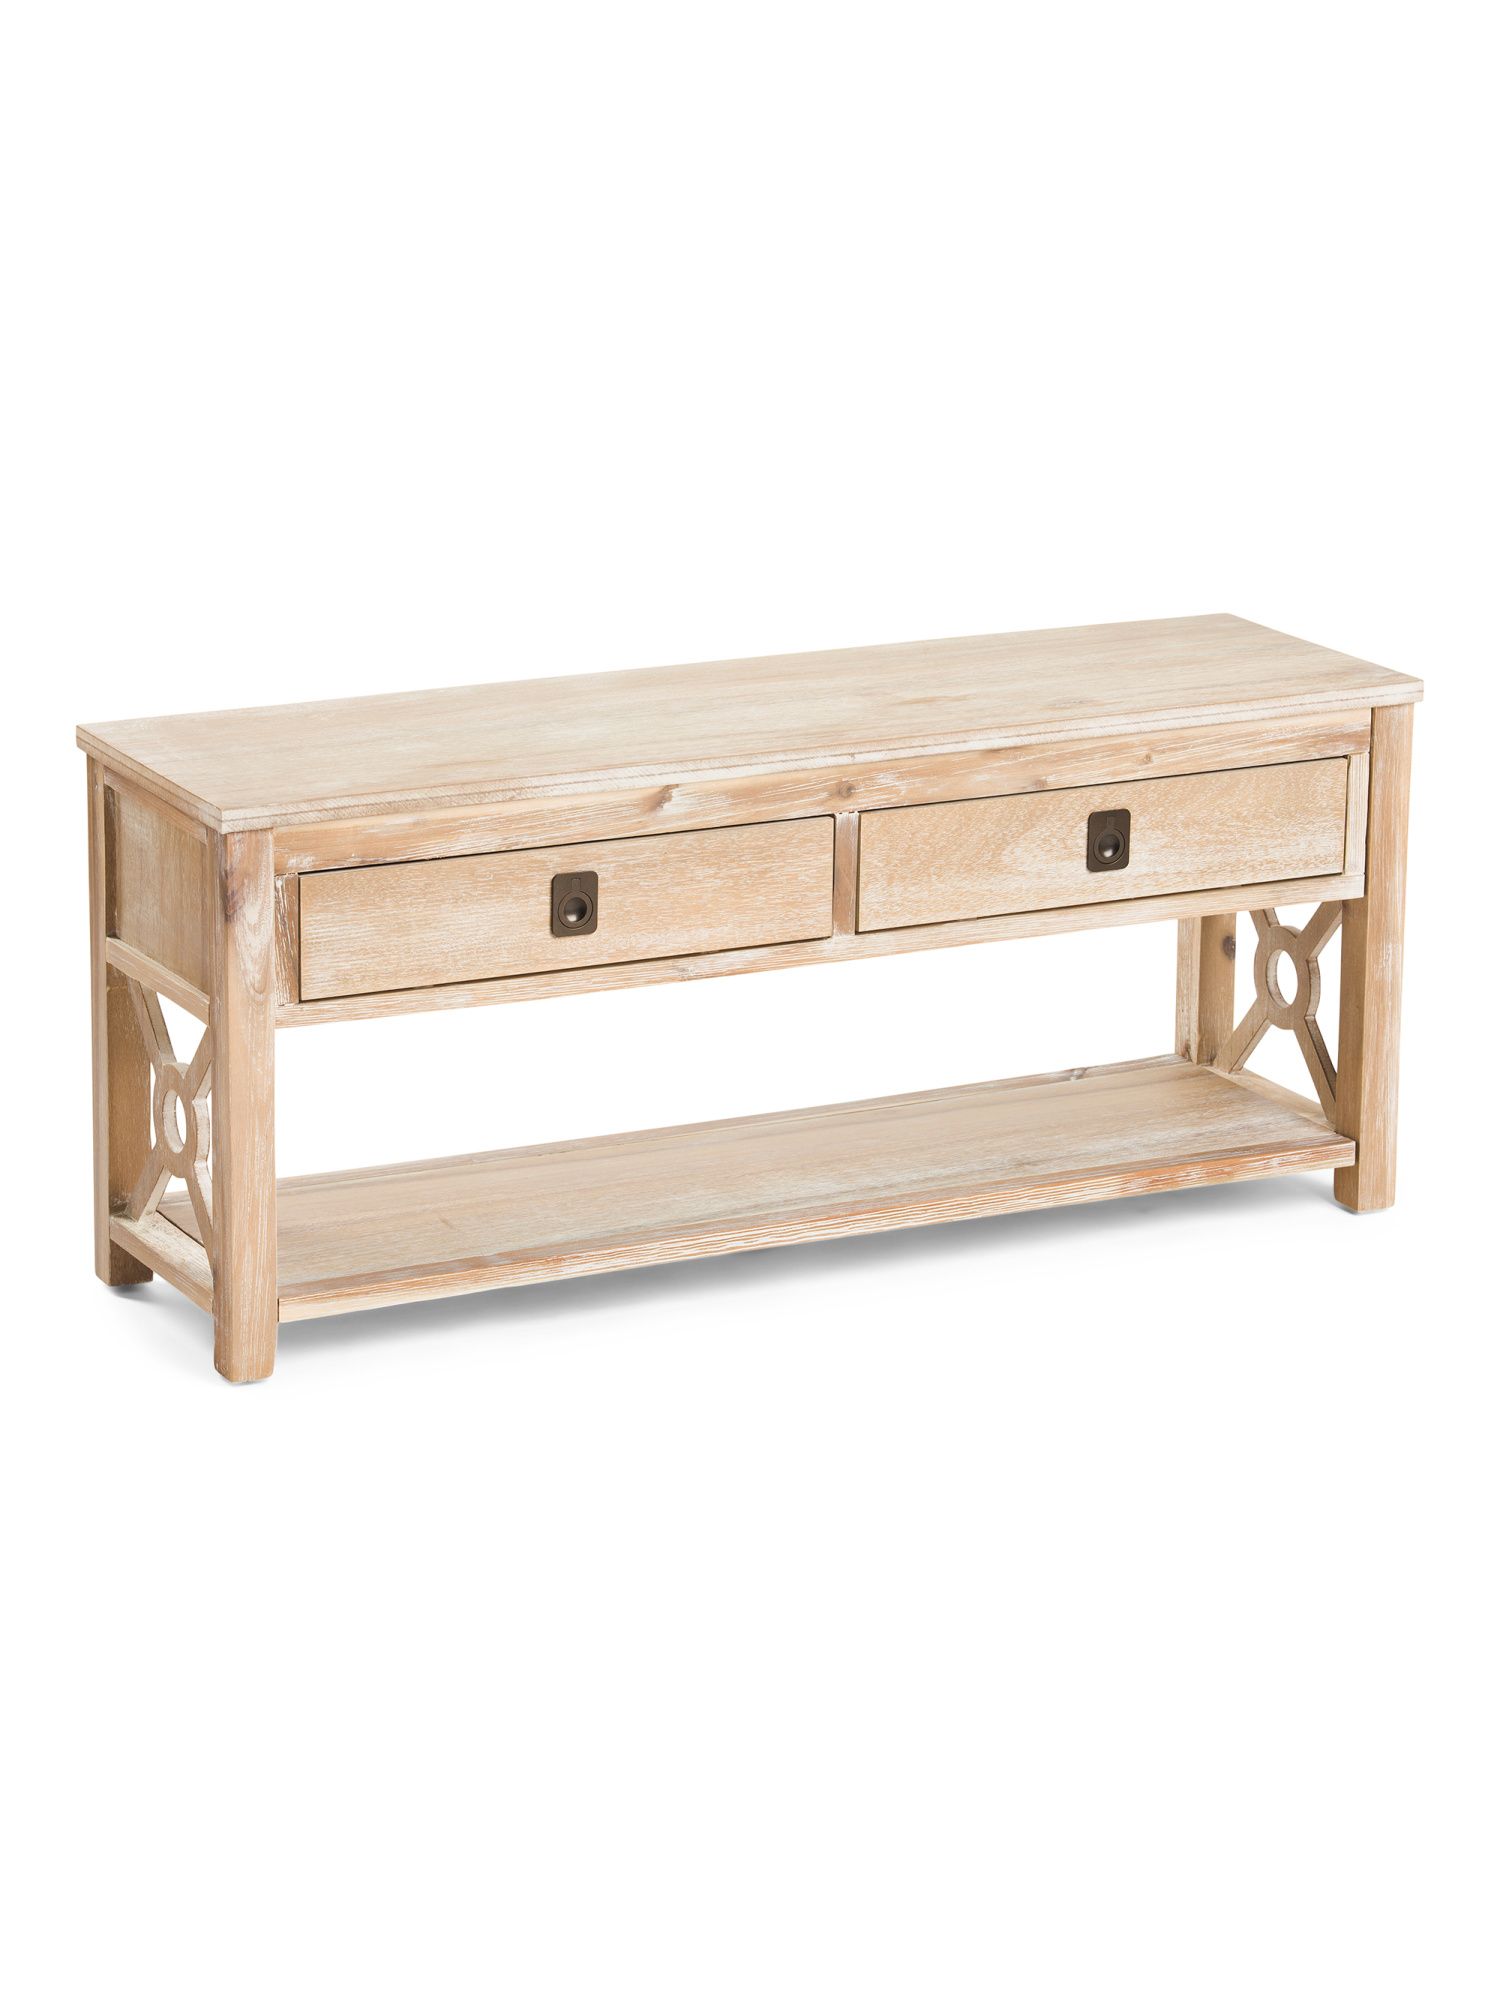 2 Drawer Bench With Shelf | TJ Maxx